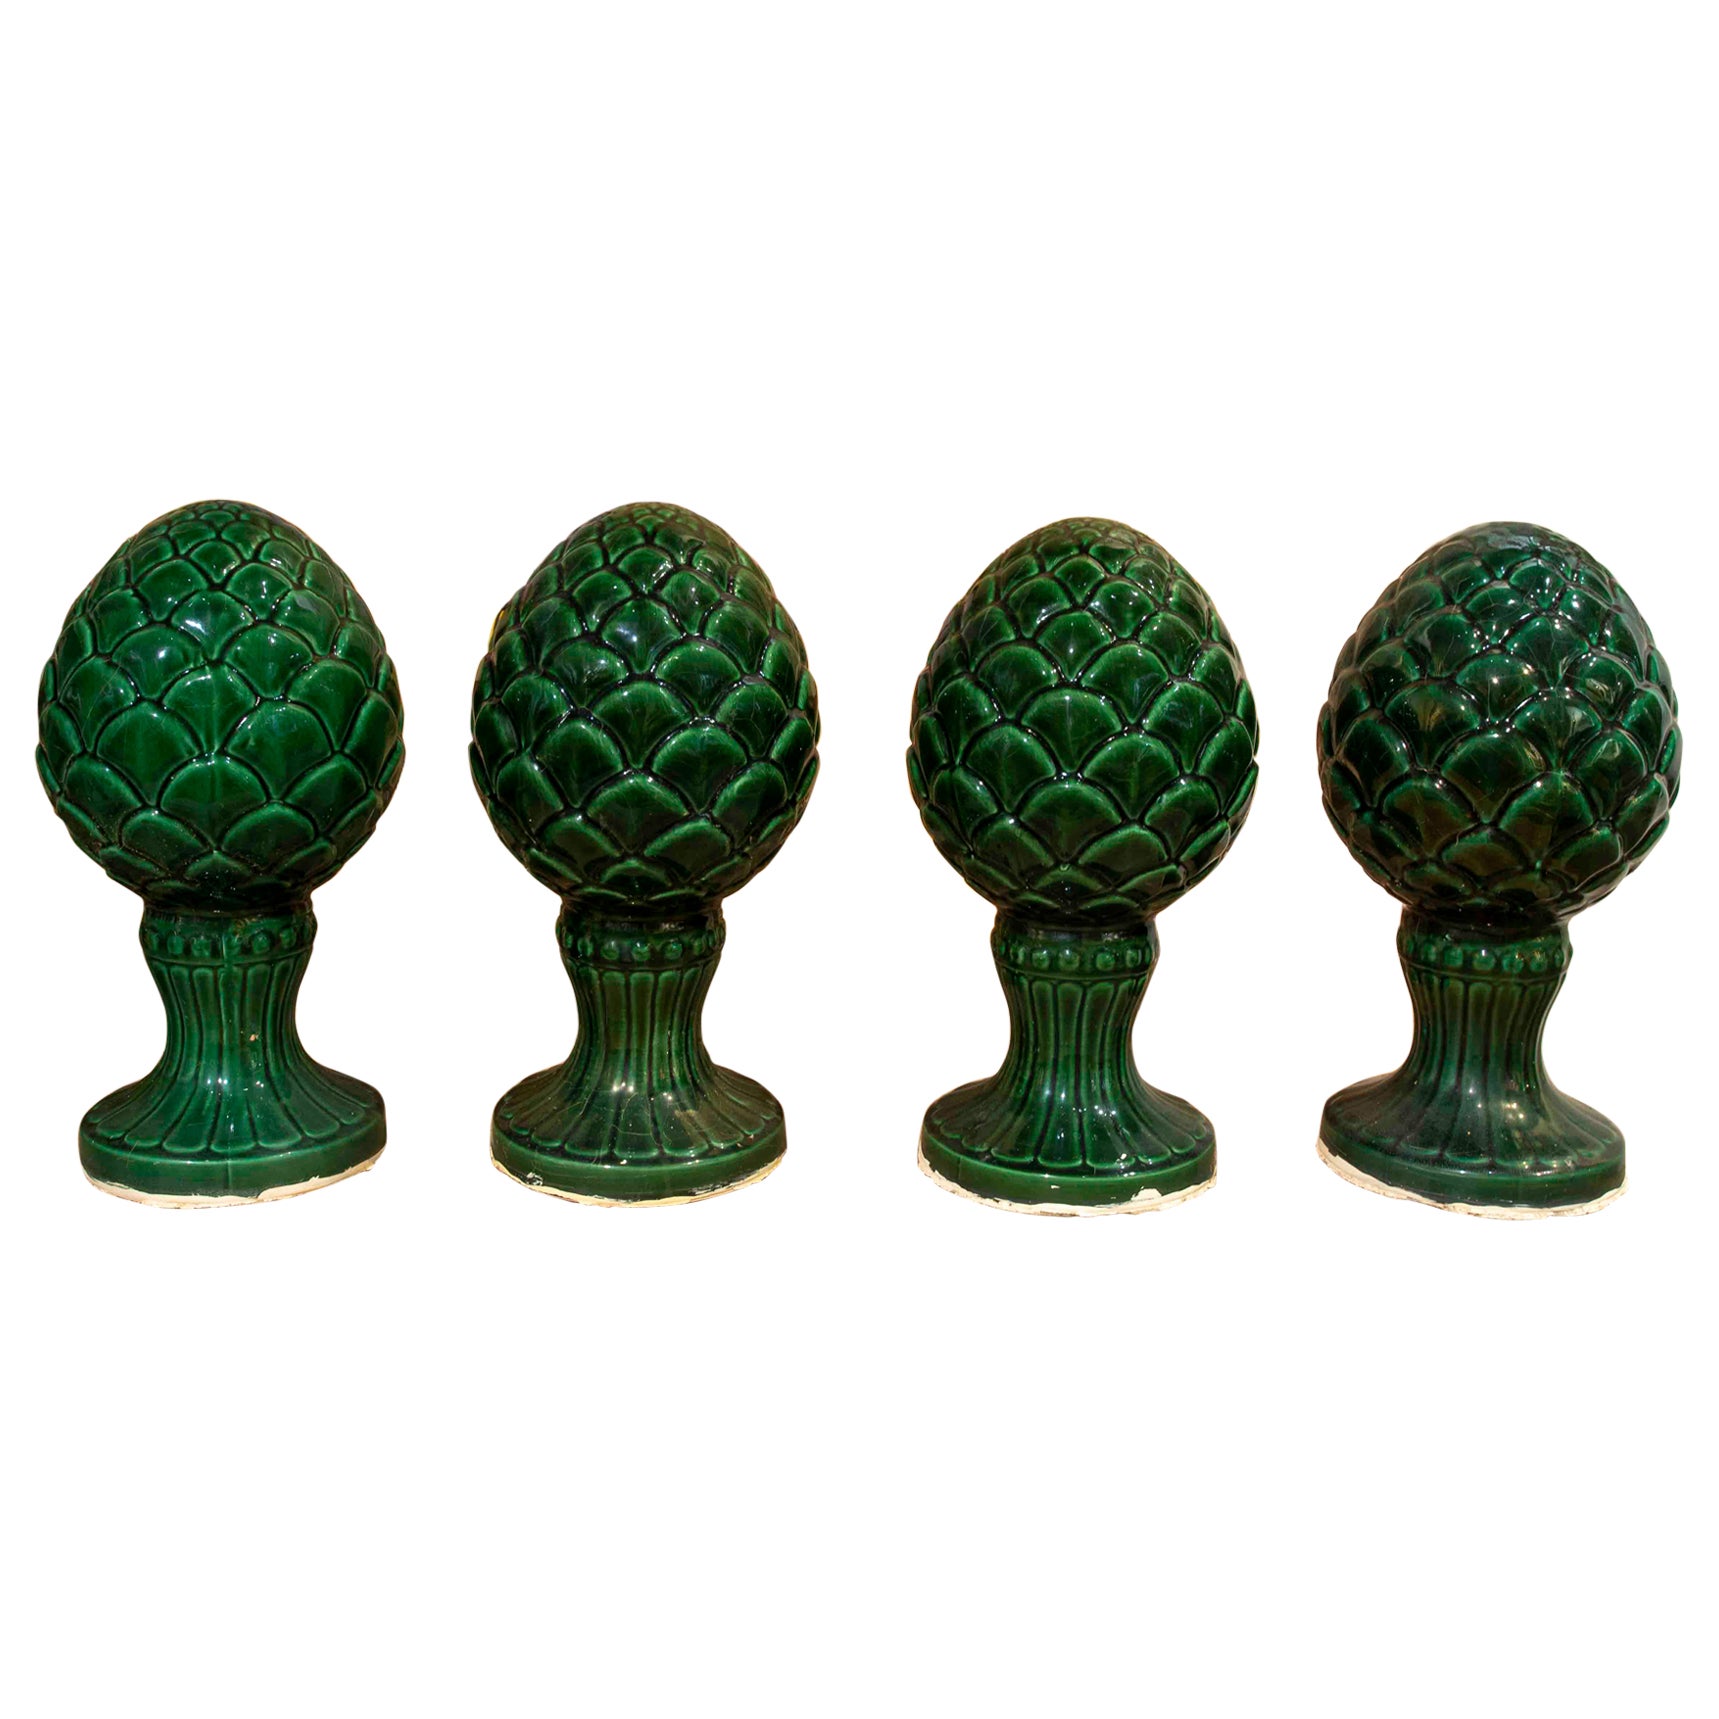 Satz von vier grün glasierten Keramikendstücken in Form von Ananas